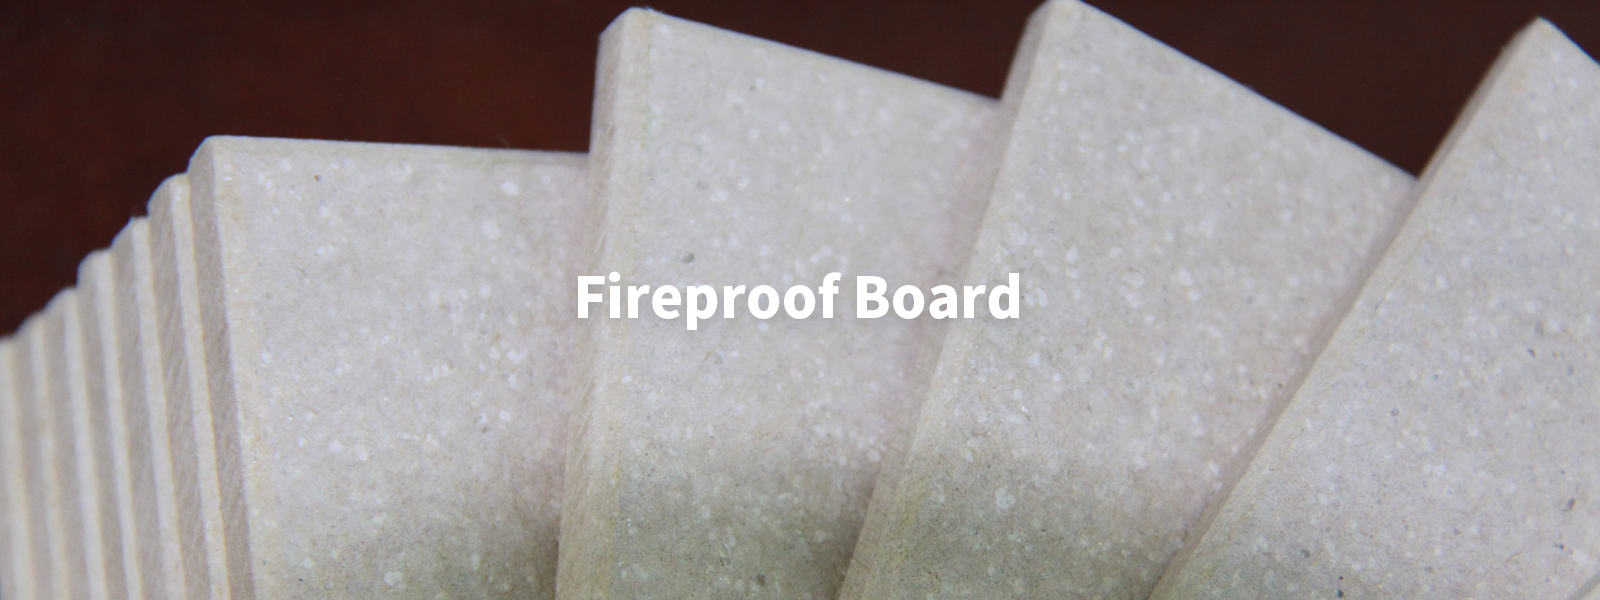 Fireproof Board